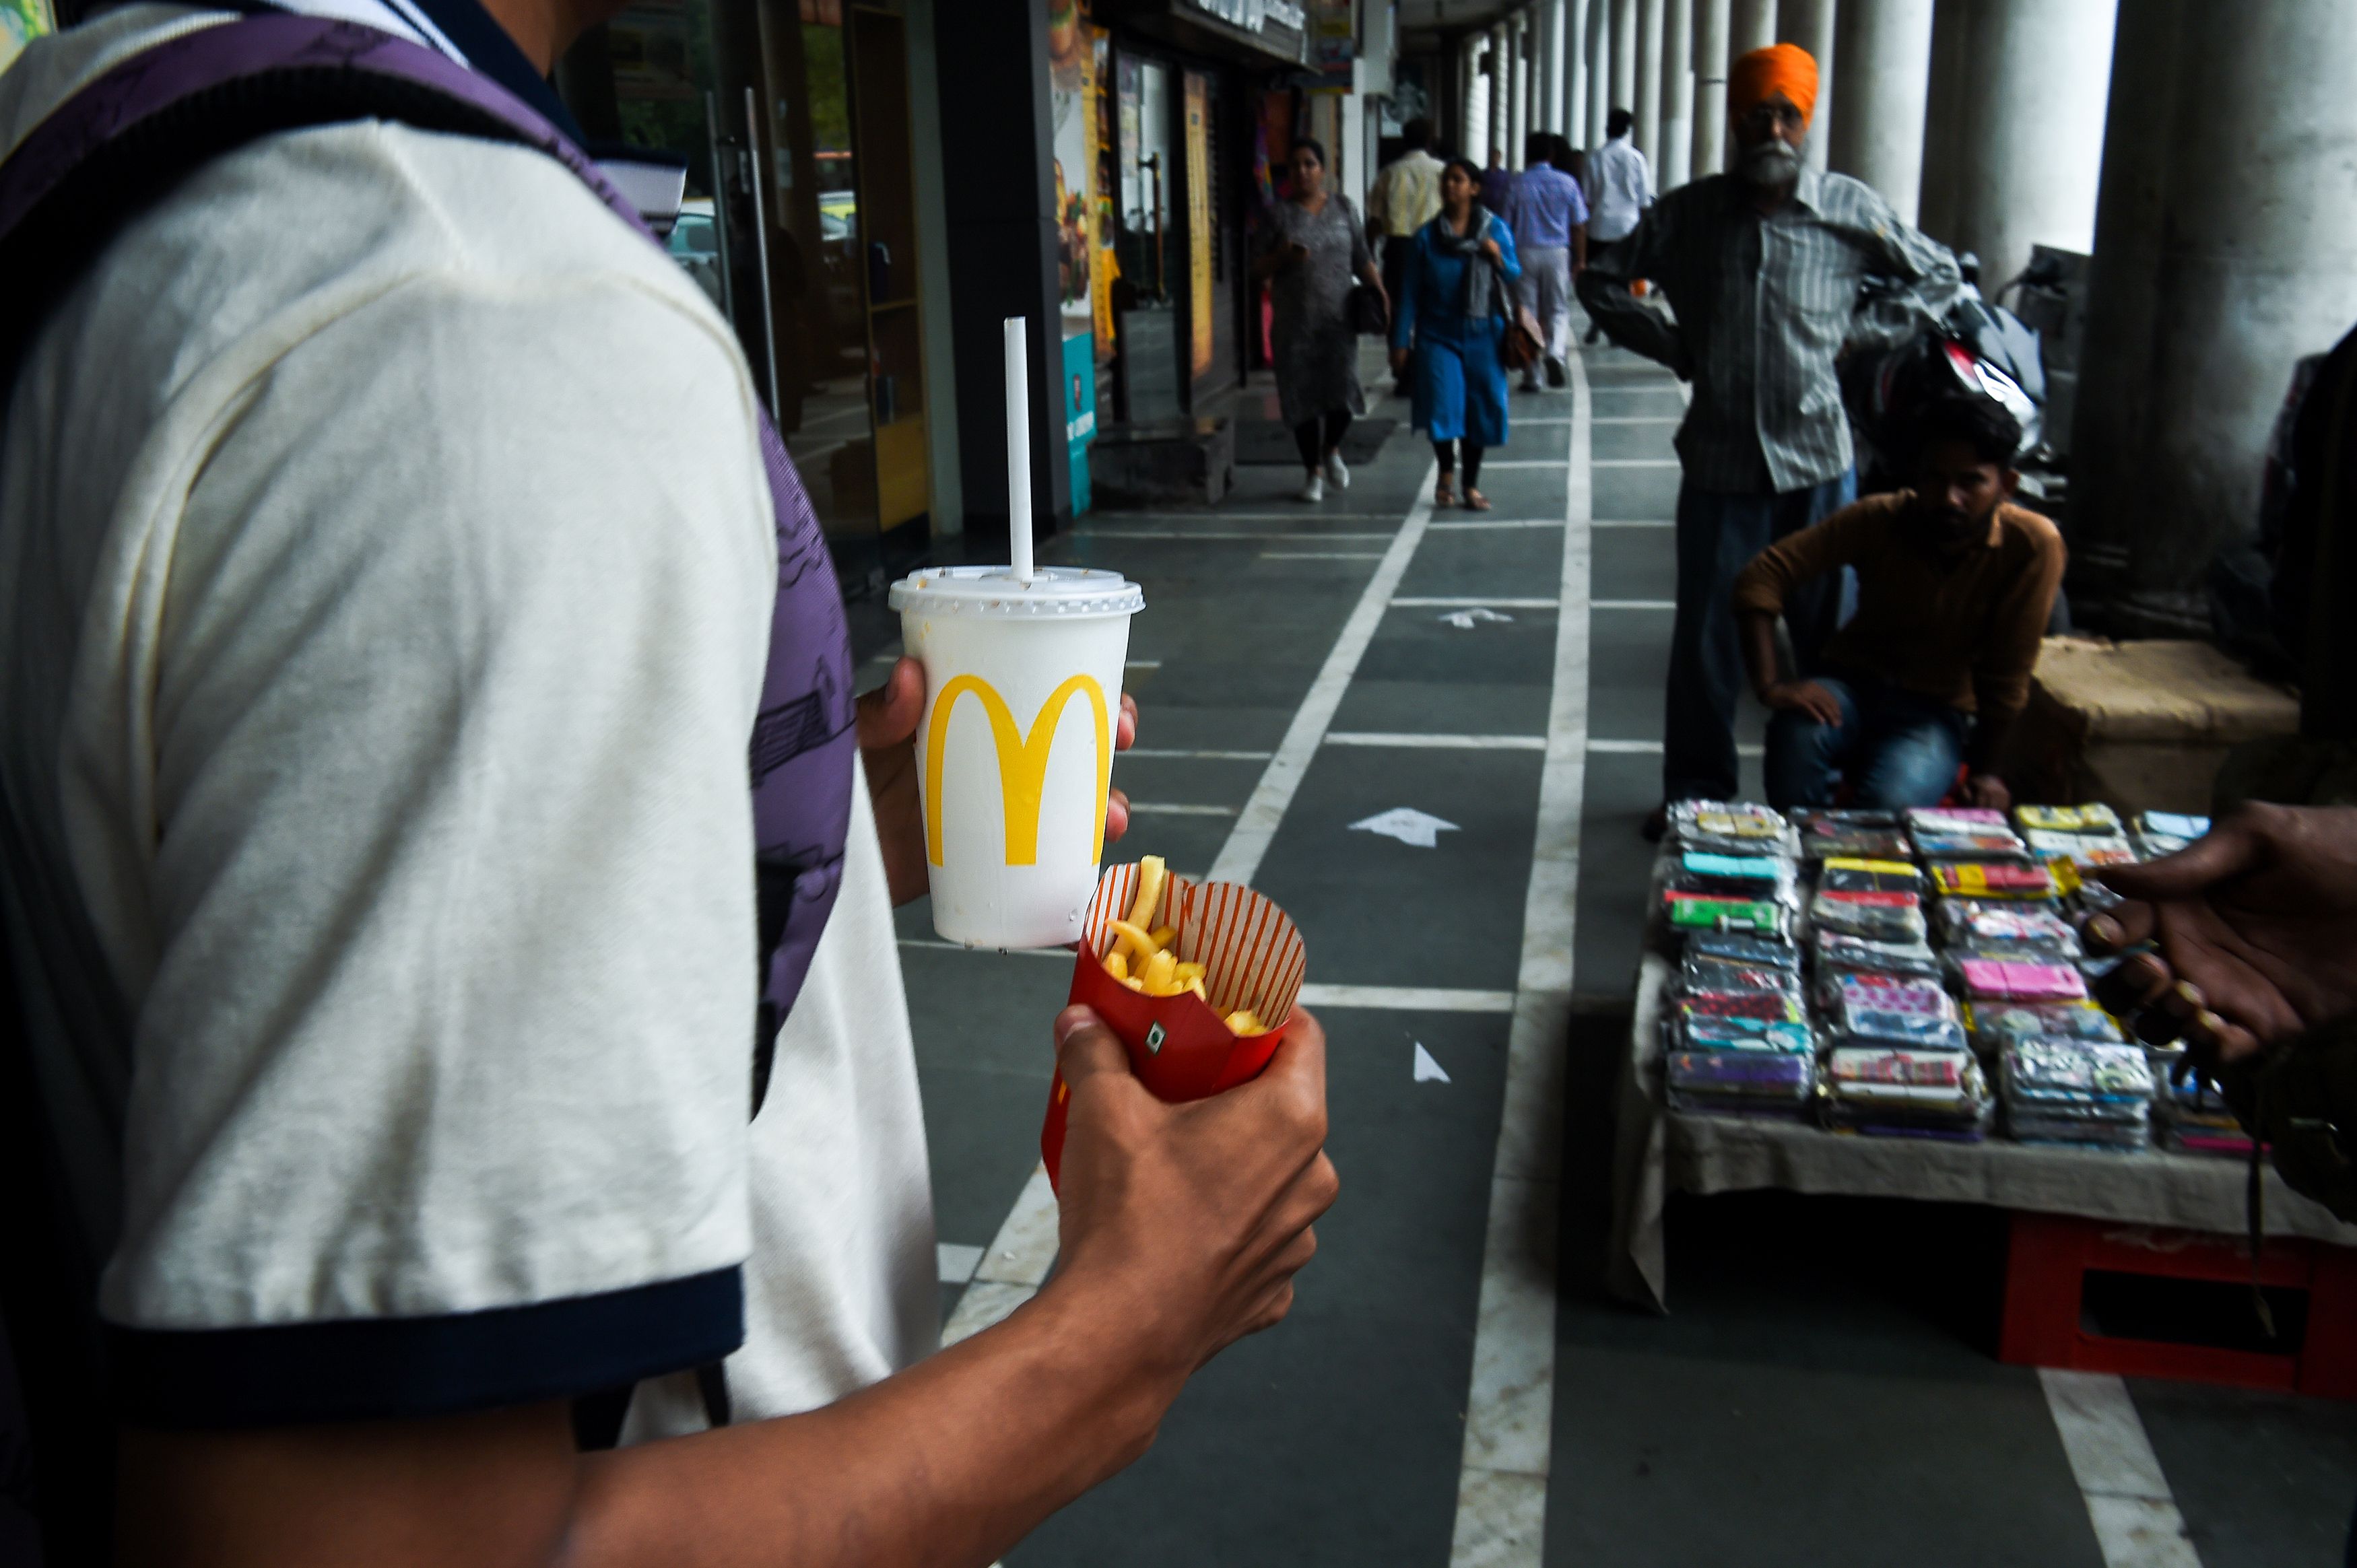 Man carrying a McDonald's meal